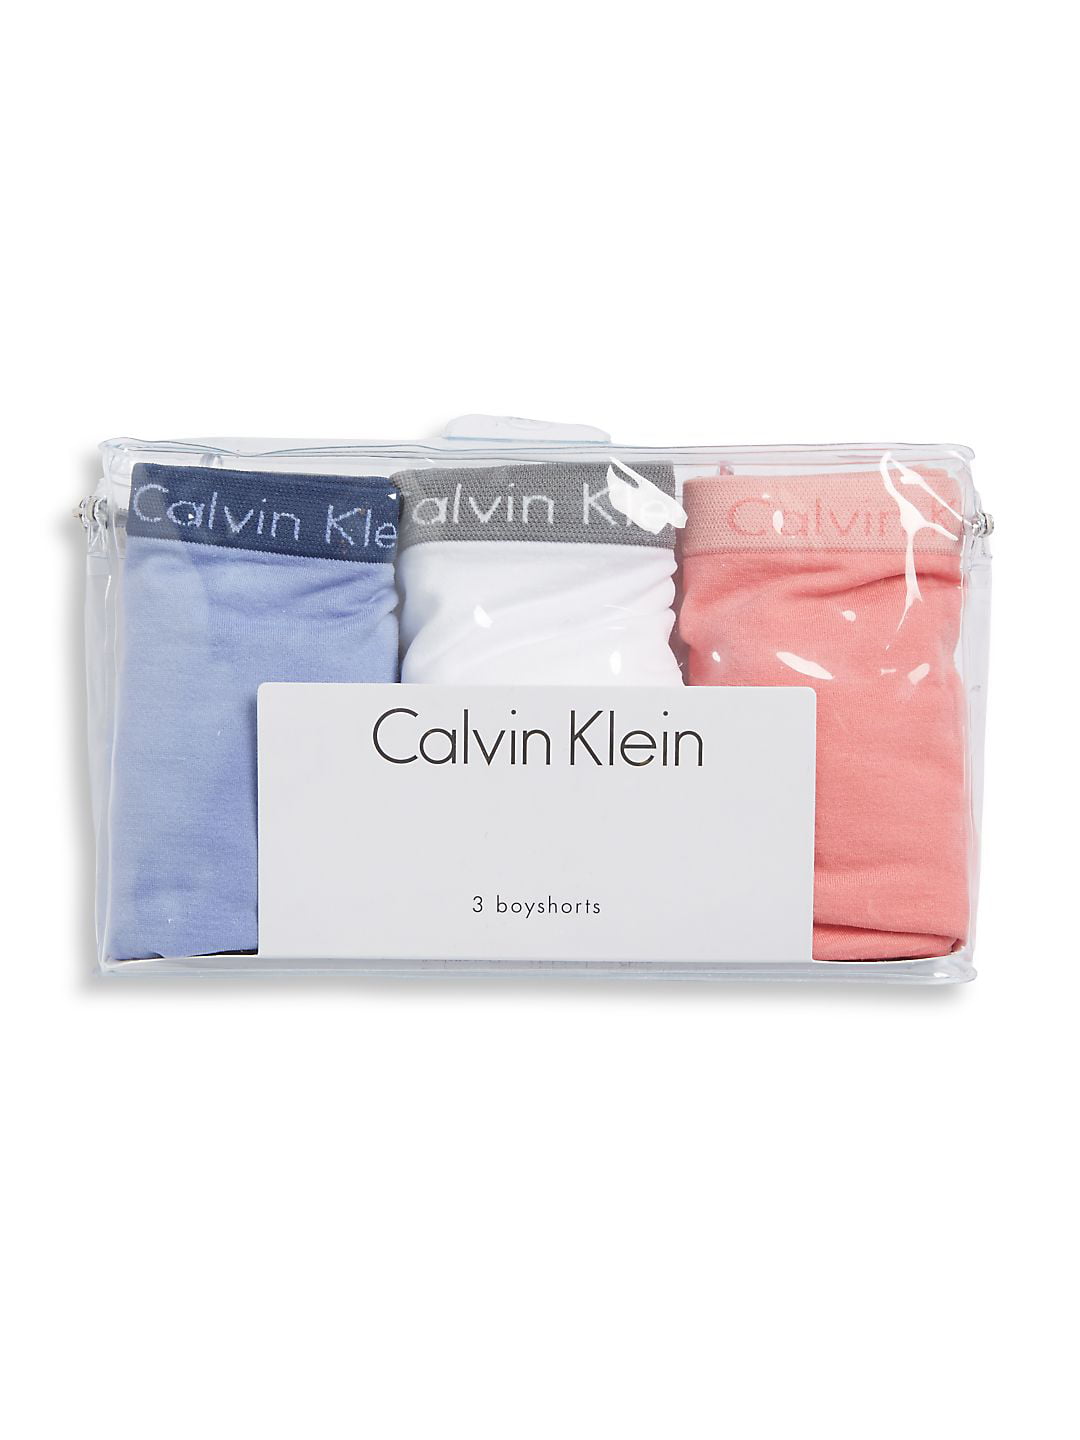 Calvin Klein Women's XS-XL Modern Cotton Thong Panty, Black, Large 